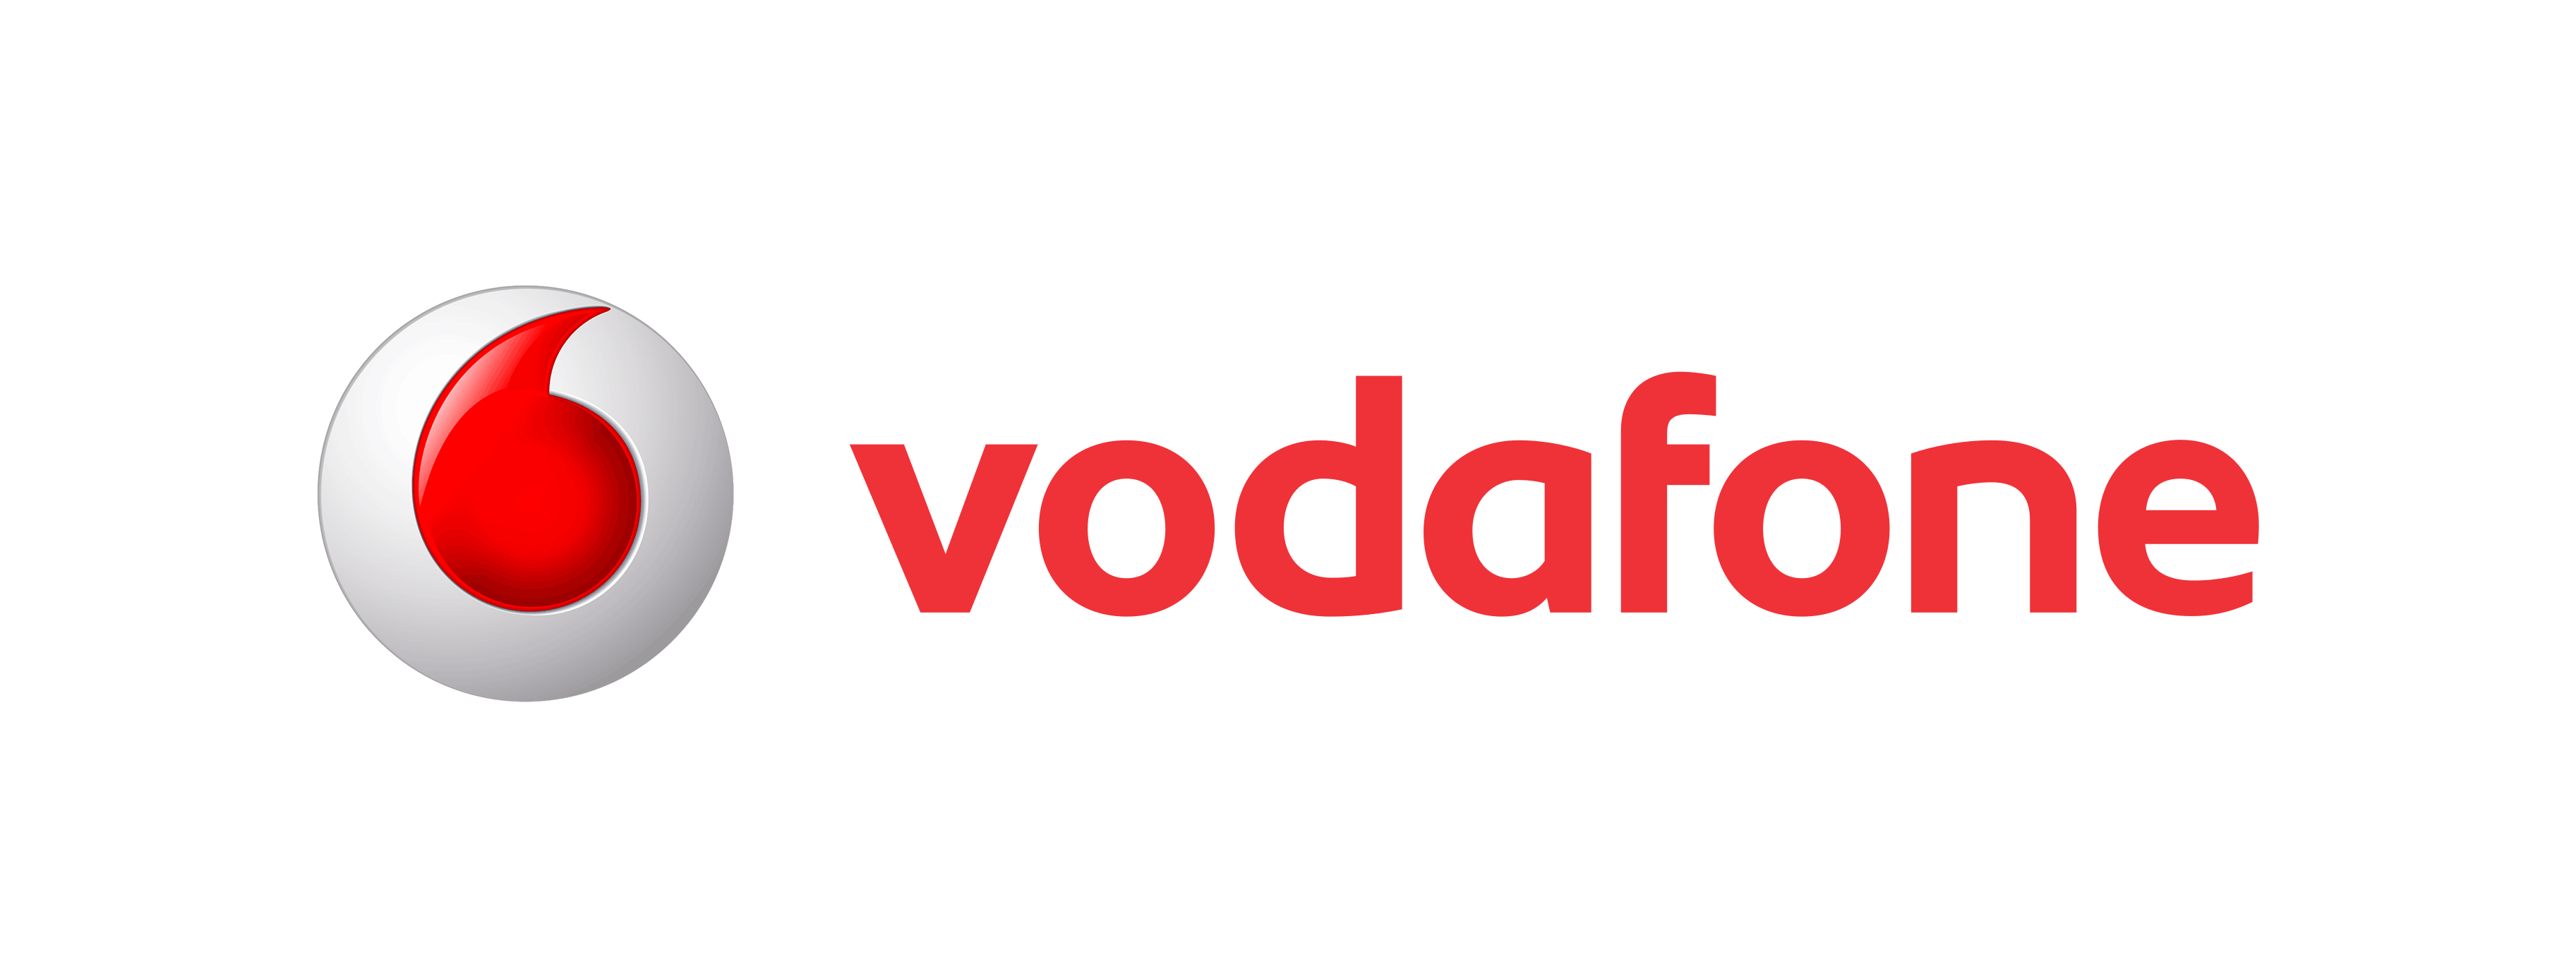 Vodafone Logo Old - Vodafone 